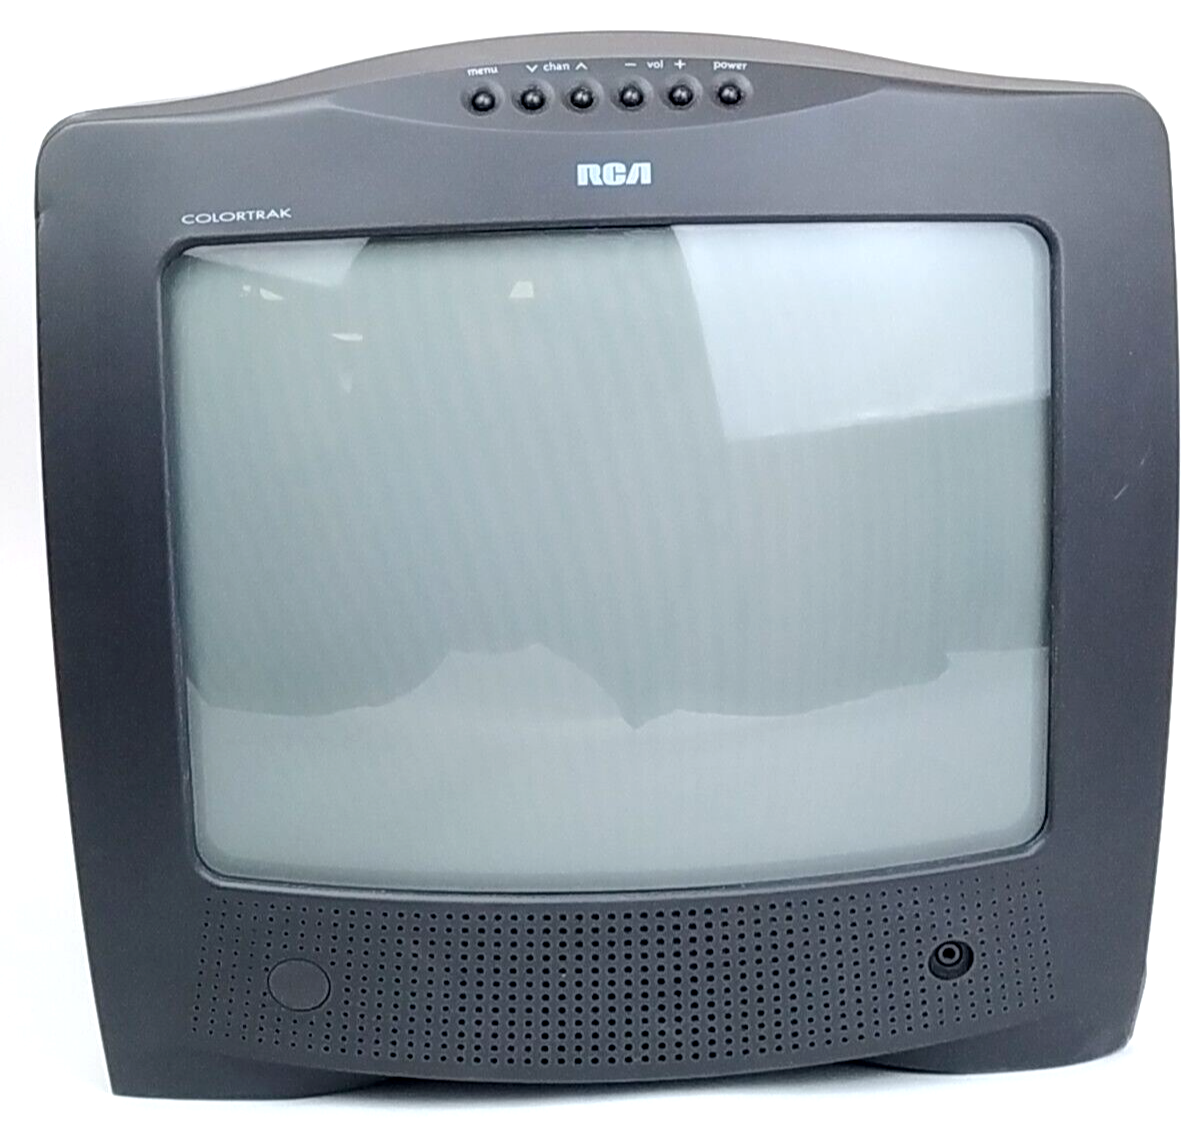 RCA 13" Color TV ColorTrak E1332BC Retro Gaming Television Tested CRT Coax Tube - $74.24